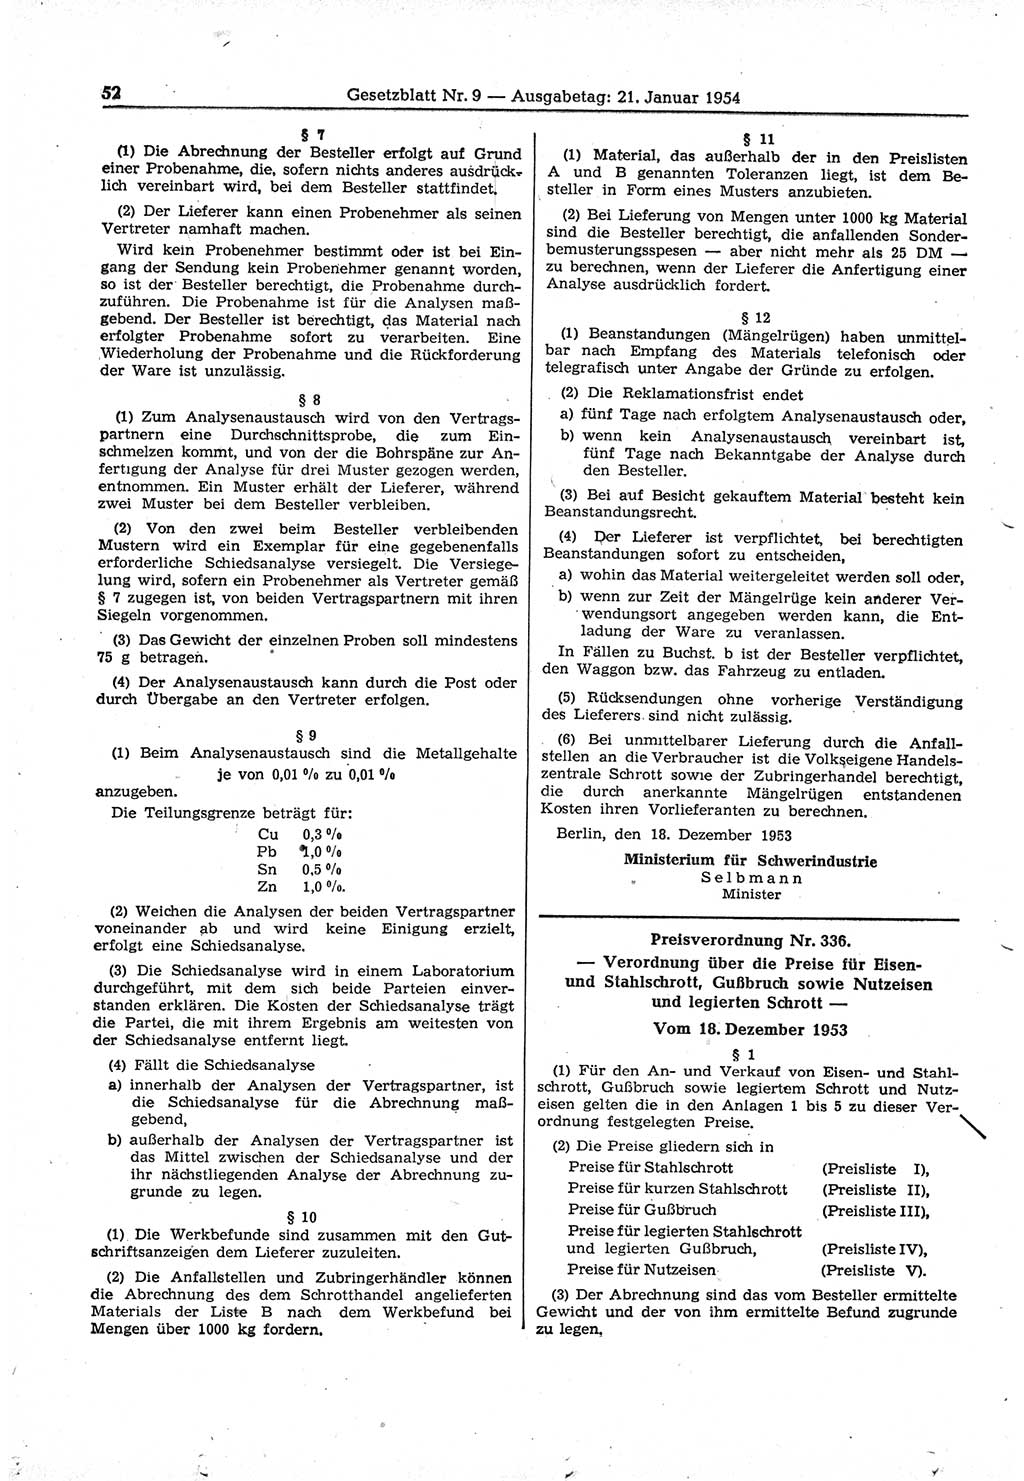 Gesetzblatt (GBl.) der Deutschen Demokratischen Republik (DDR) 1954, Seite 52 (GBl. DDR 1954, S. 52)